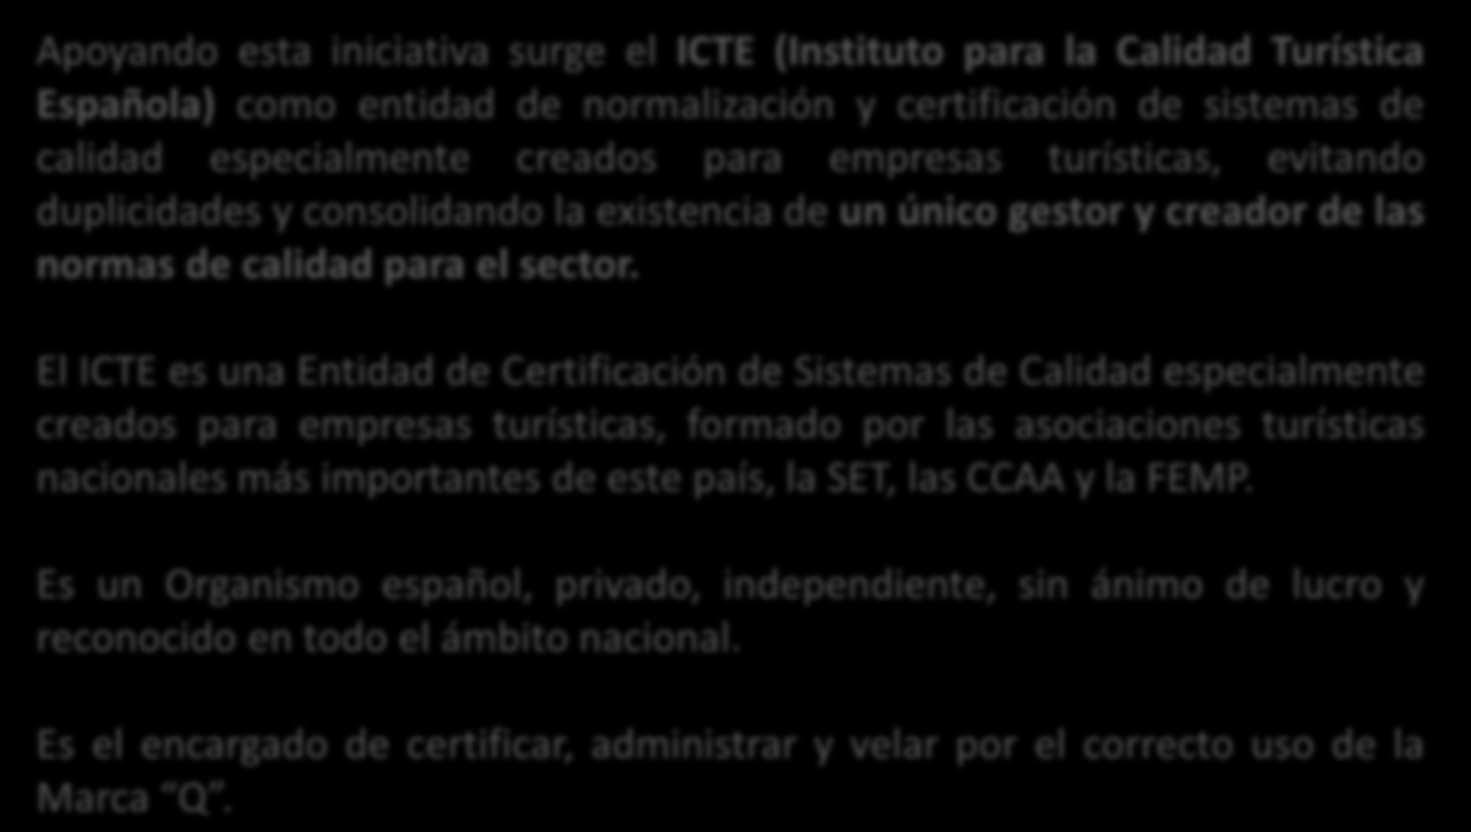 6 Quién la otorga Apoyando esta iniciativa surge el ICTE (Instituto para la Calidad Turística Española) como entidad de normalización y certificación de sistemas de calidad especialmente creados para